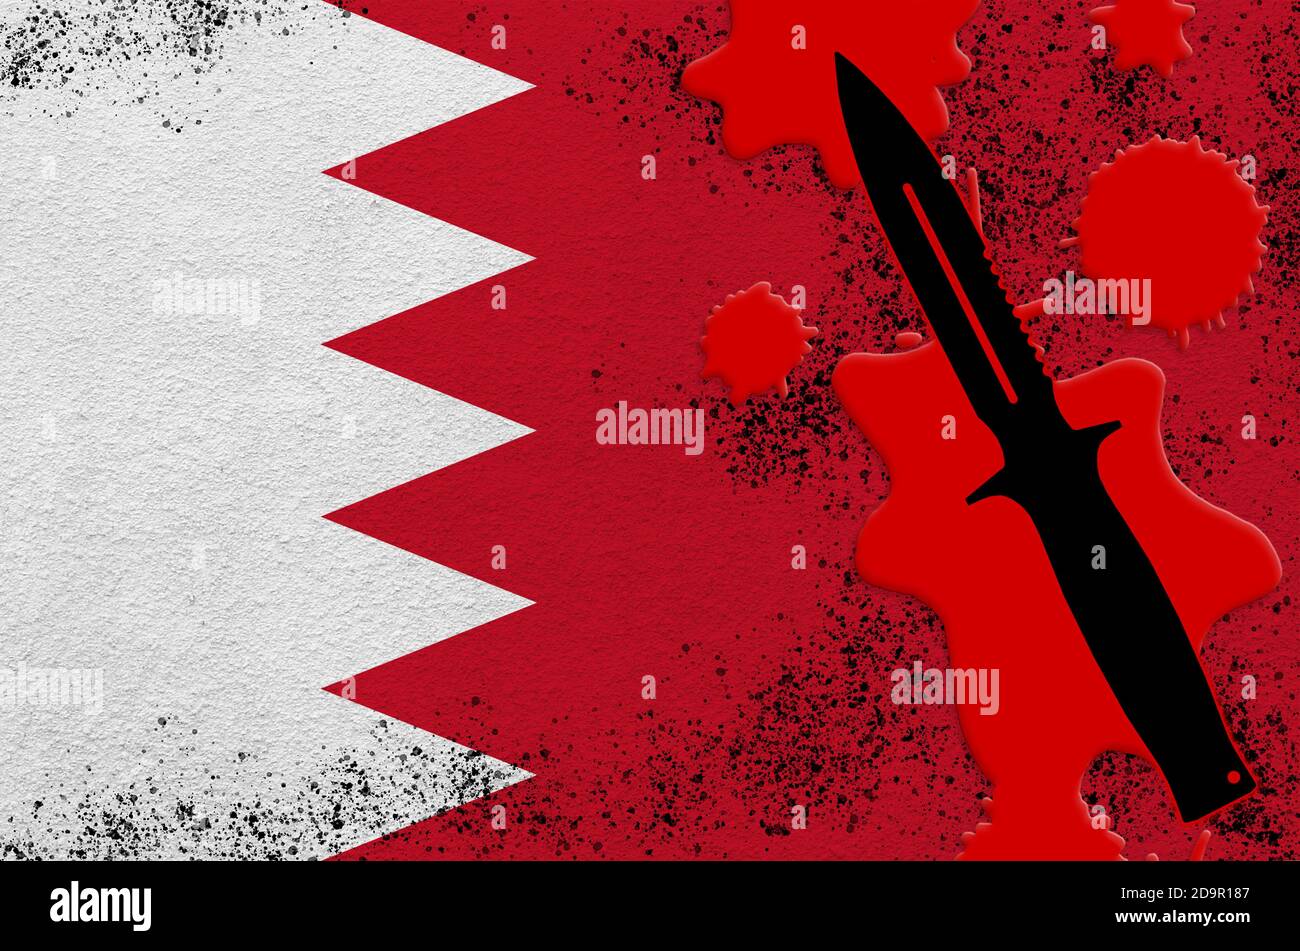 Drapeau de Bahreïn et couteau tactique noir dans le sang rouge. Concept d'attaque terroriste ou d'opérations militaires avec un résultat mortel. Utilisation d'armes de mêlée dangereuses Banque D'Images